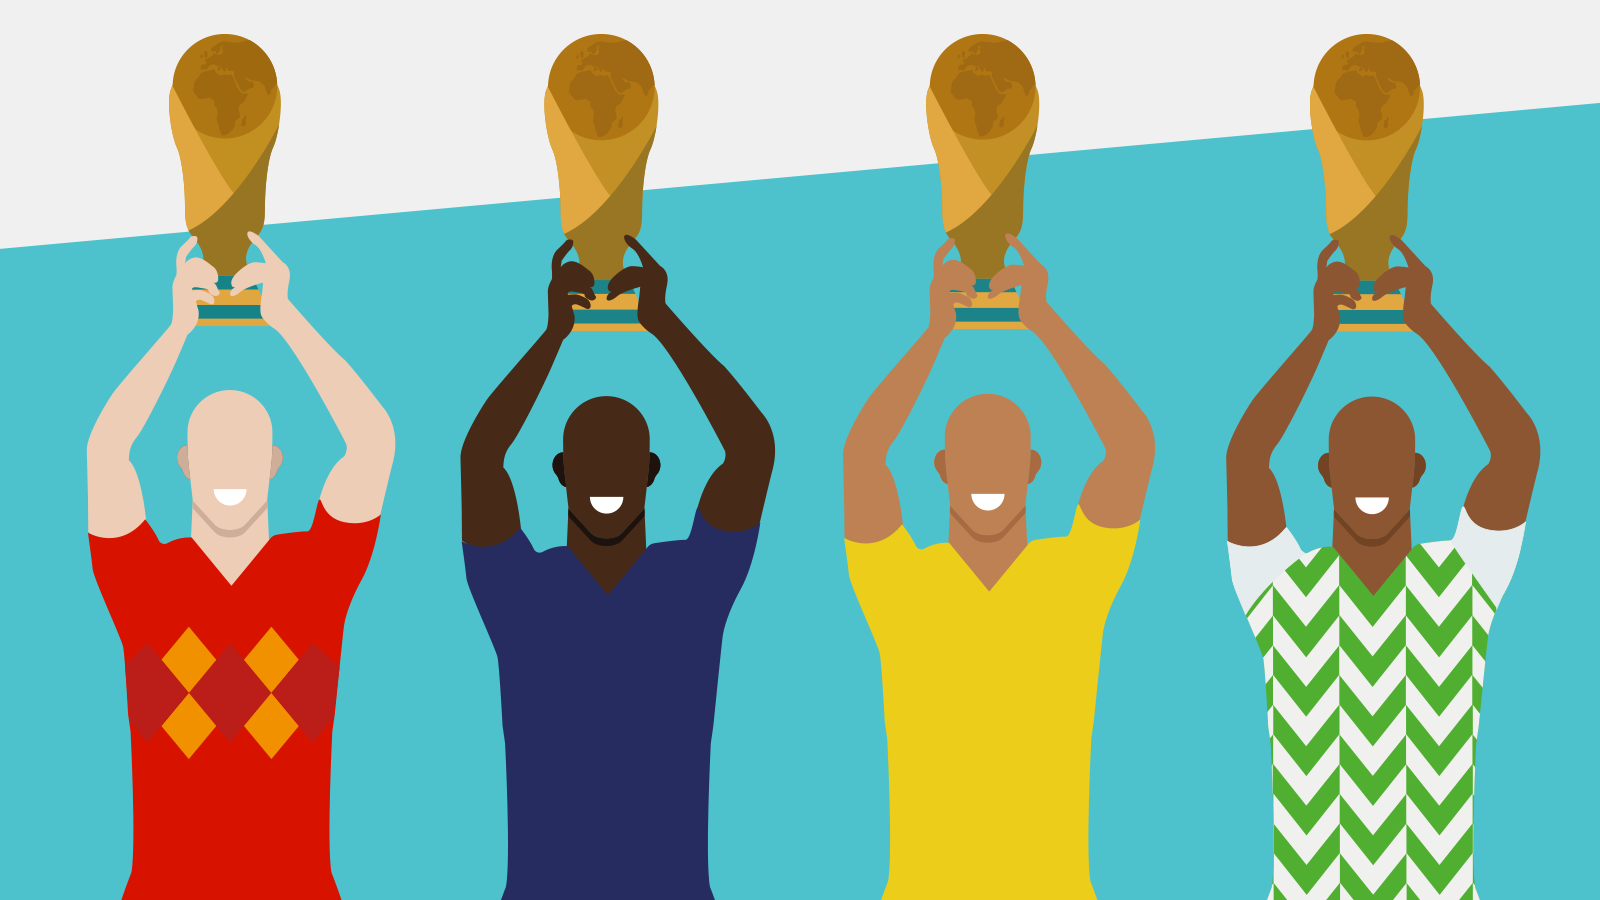 BBC News Brasil on X: Copa do Mundo 2018: 5 gráficos com curiosidades  sobre os mundiais   / X